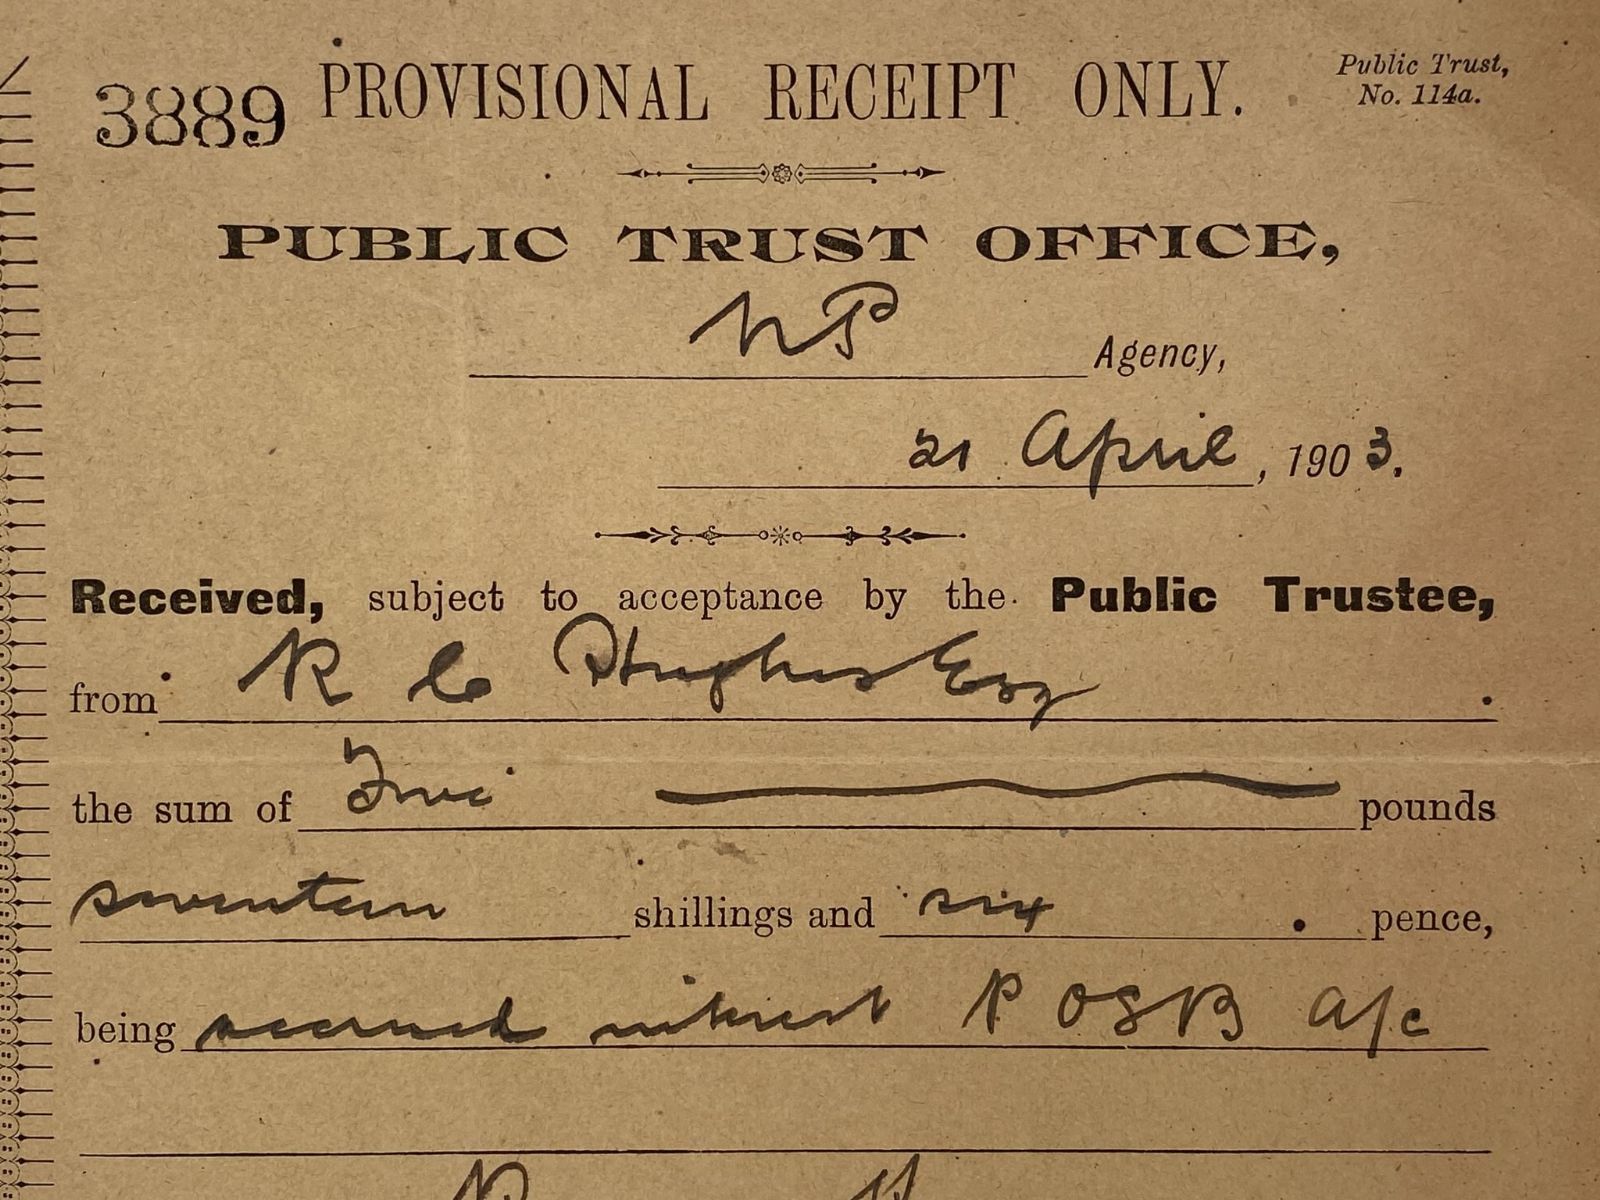 ANTIQUE INVOICE / RECEIPT: Public Trust Office 1903 (121 yo)